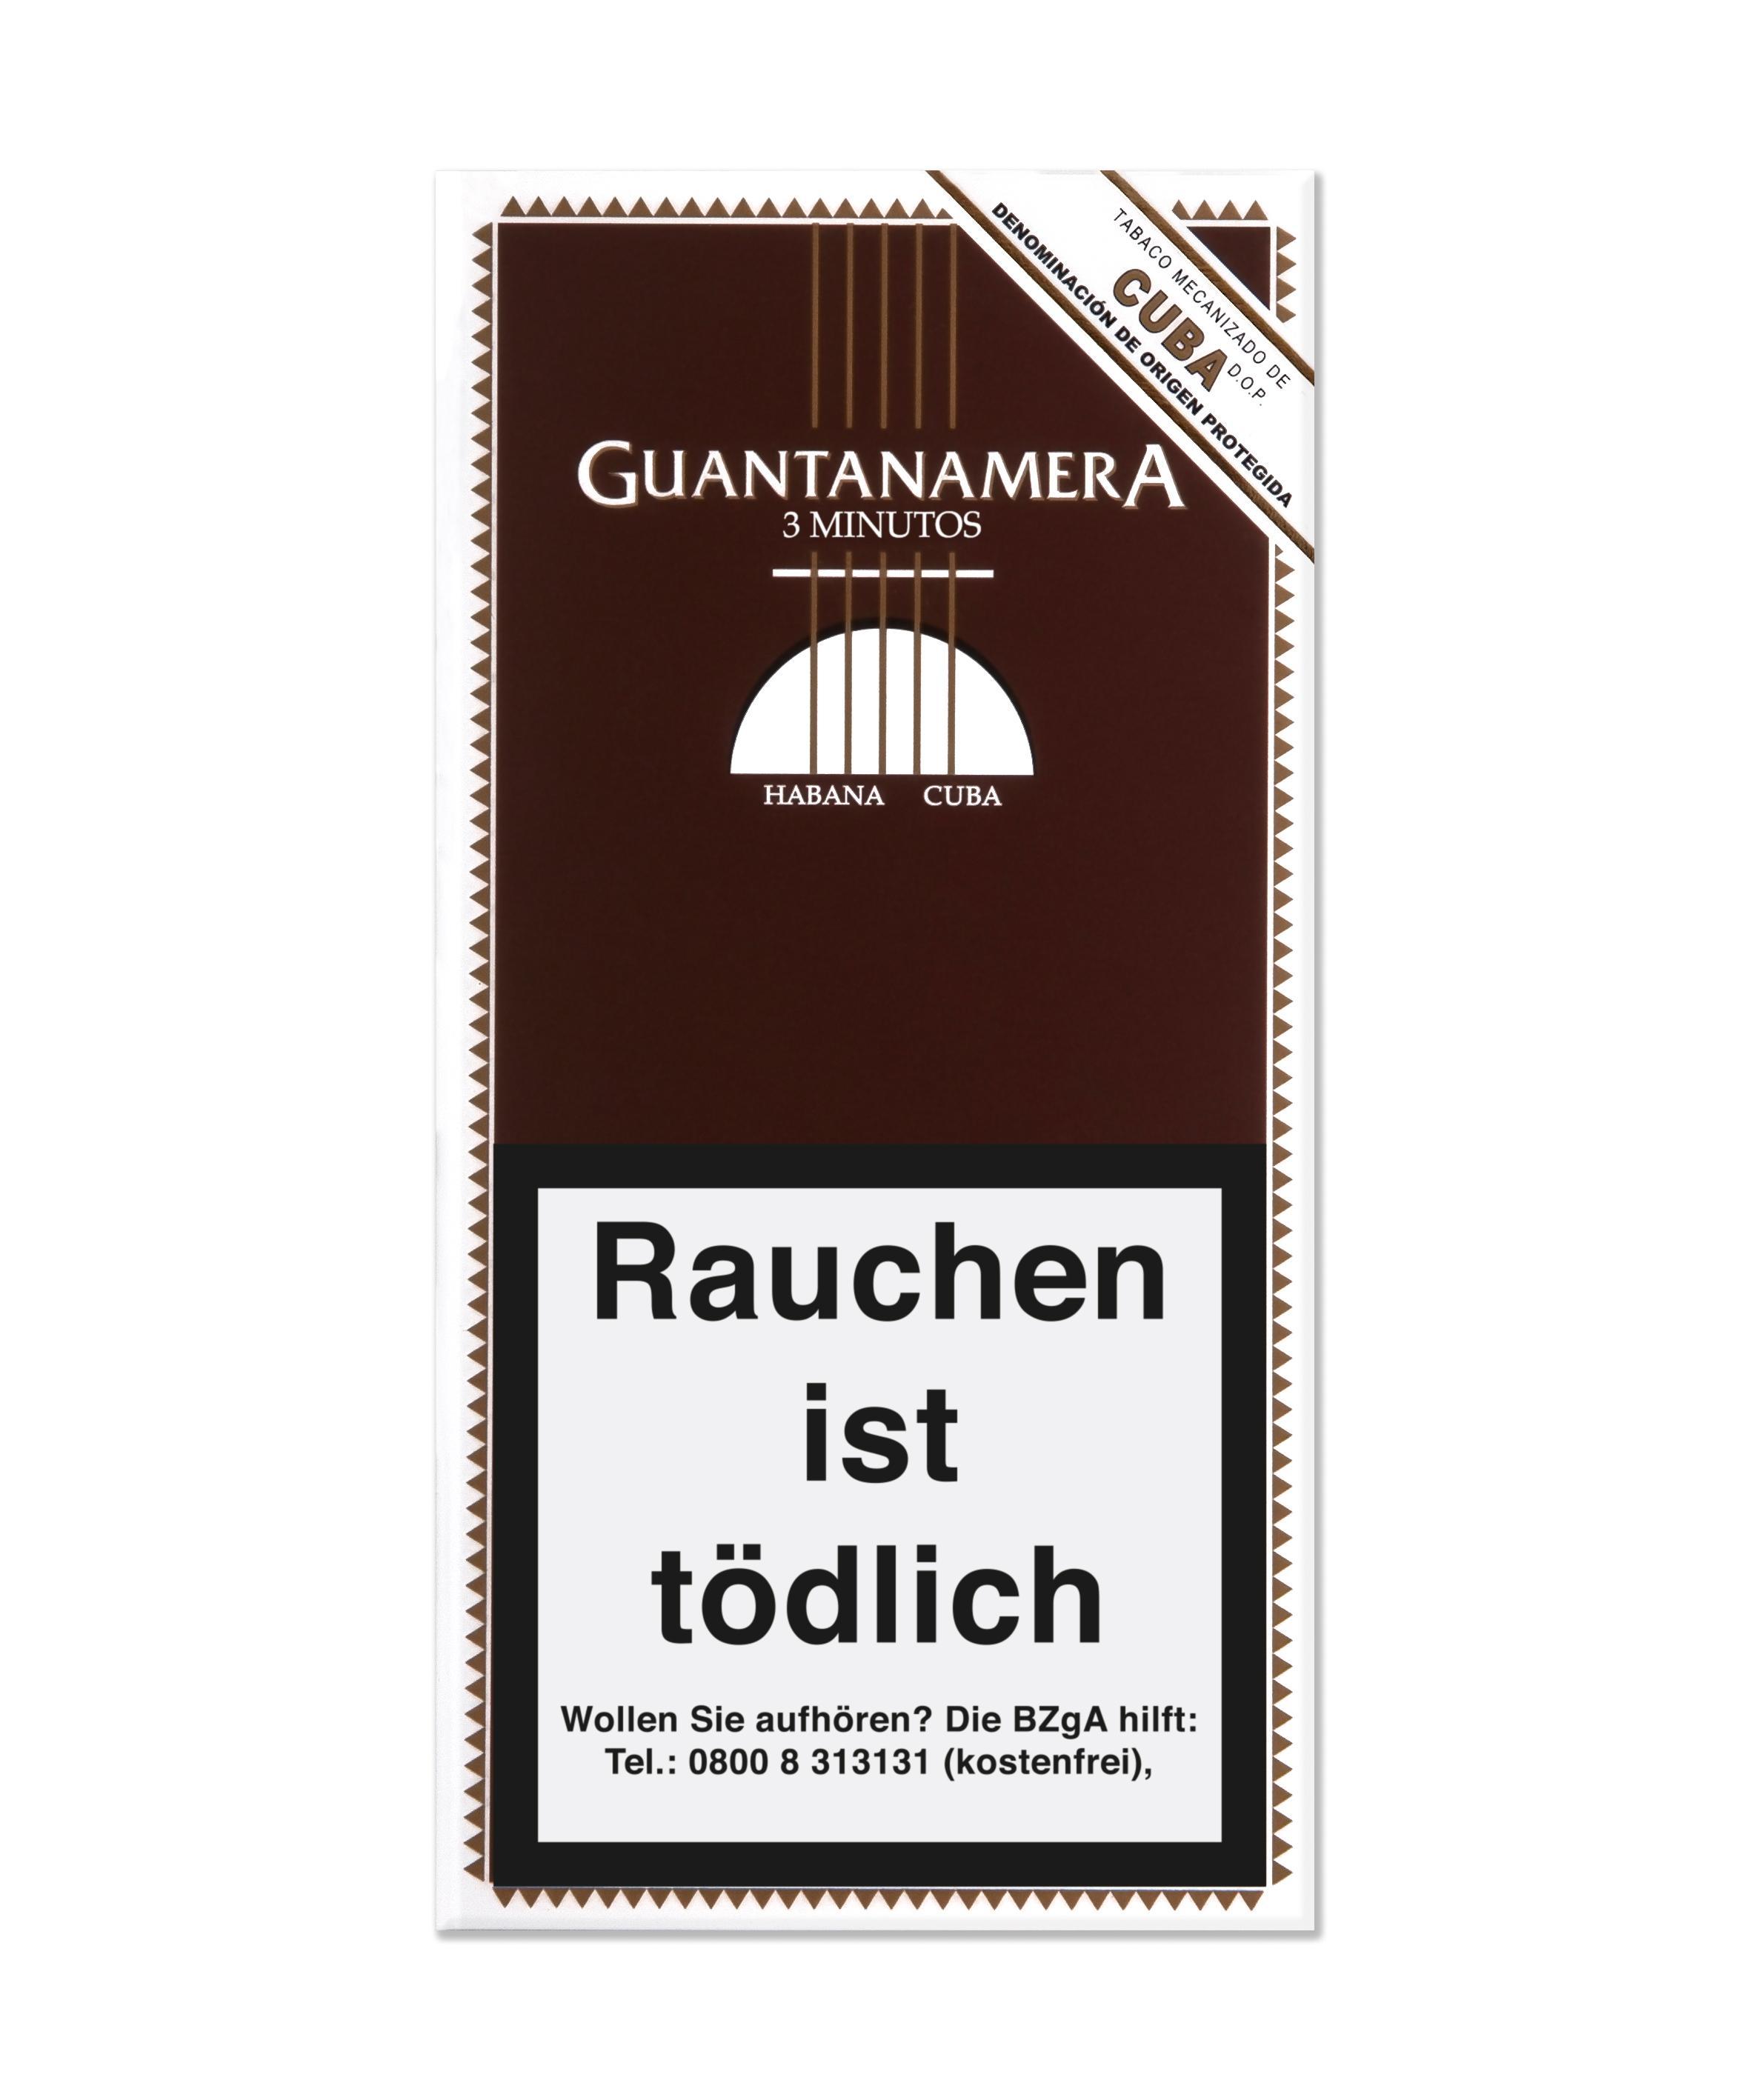 Guantanamera Minutos 1 x 3 Zigarren